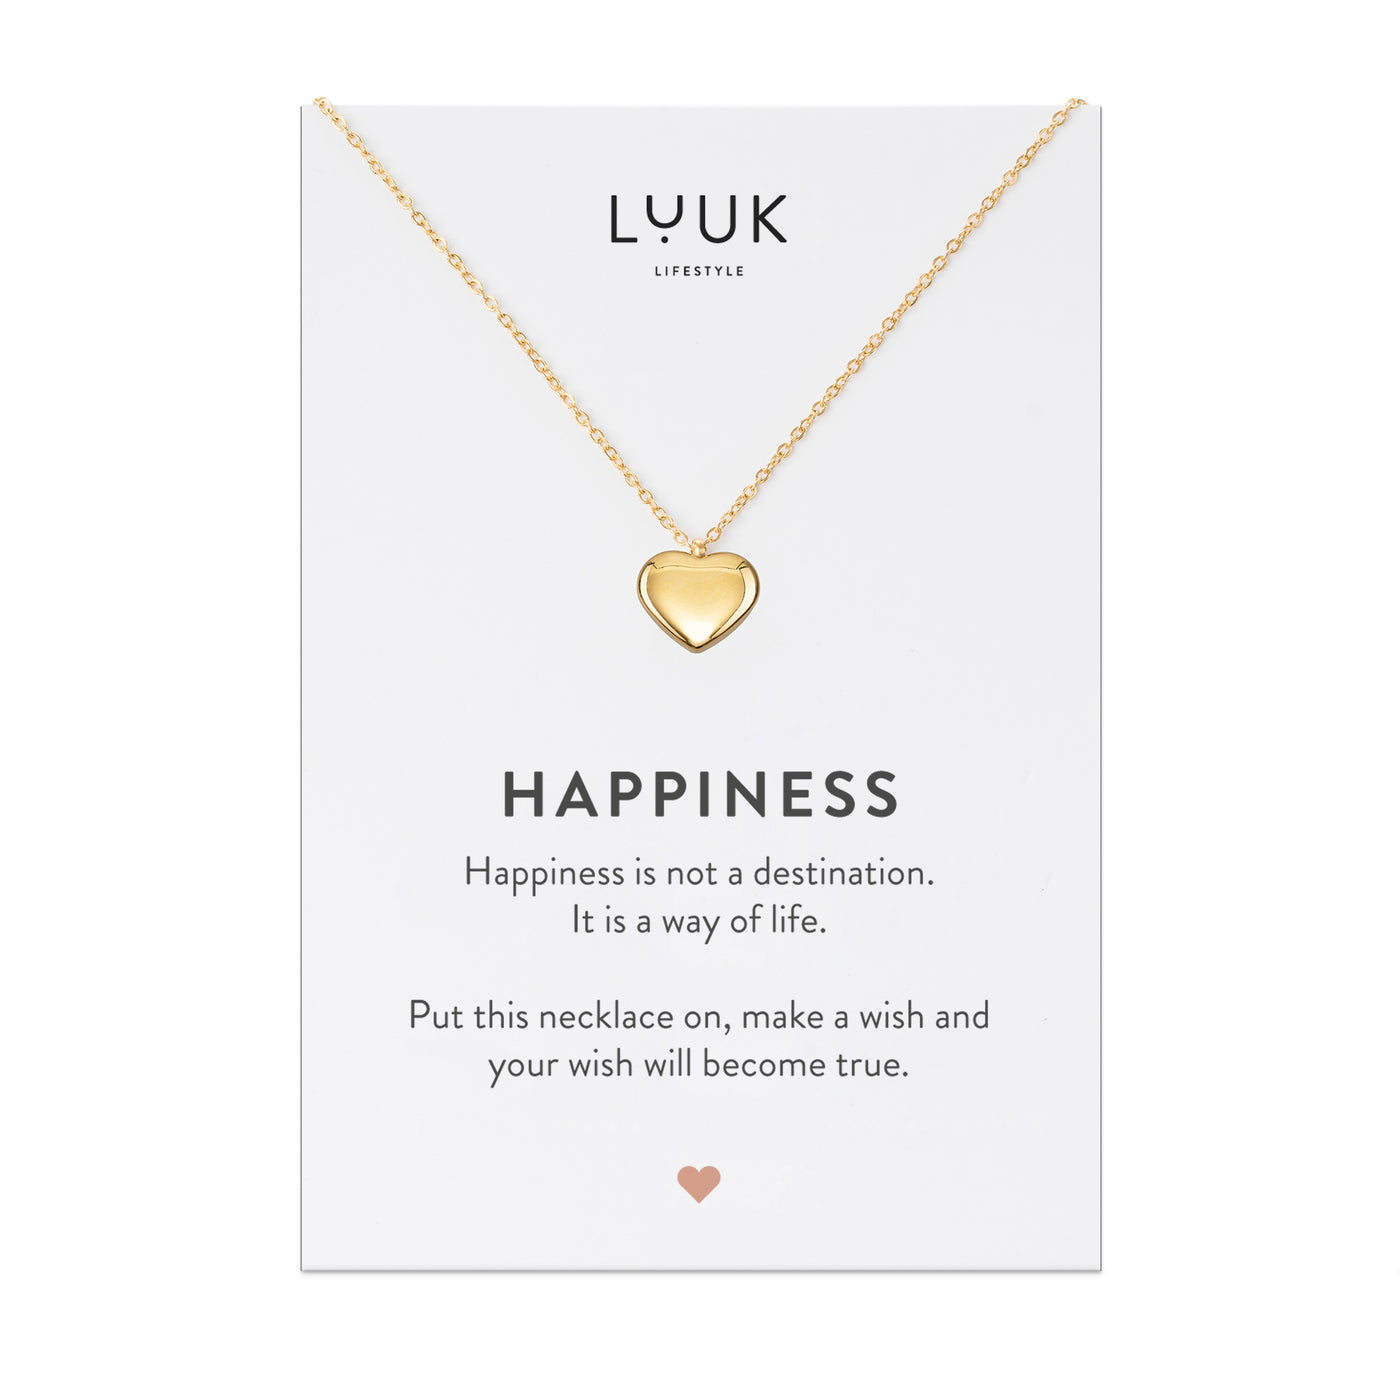 Gold Kette mit Herz Anhänger aus Edelstahl auf Happiness Spruchkarte von der Brand Luuk Lifestyle 